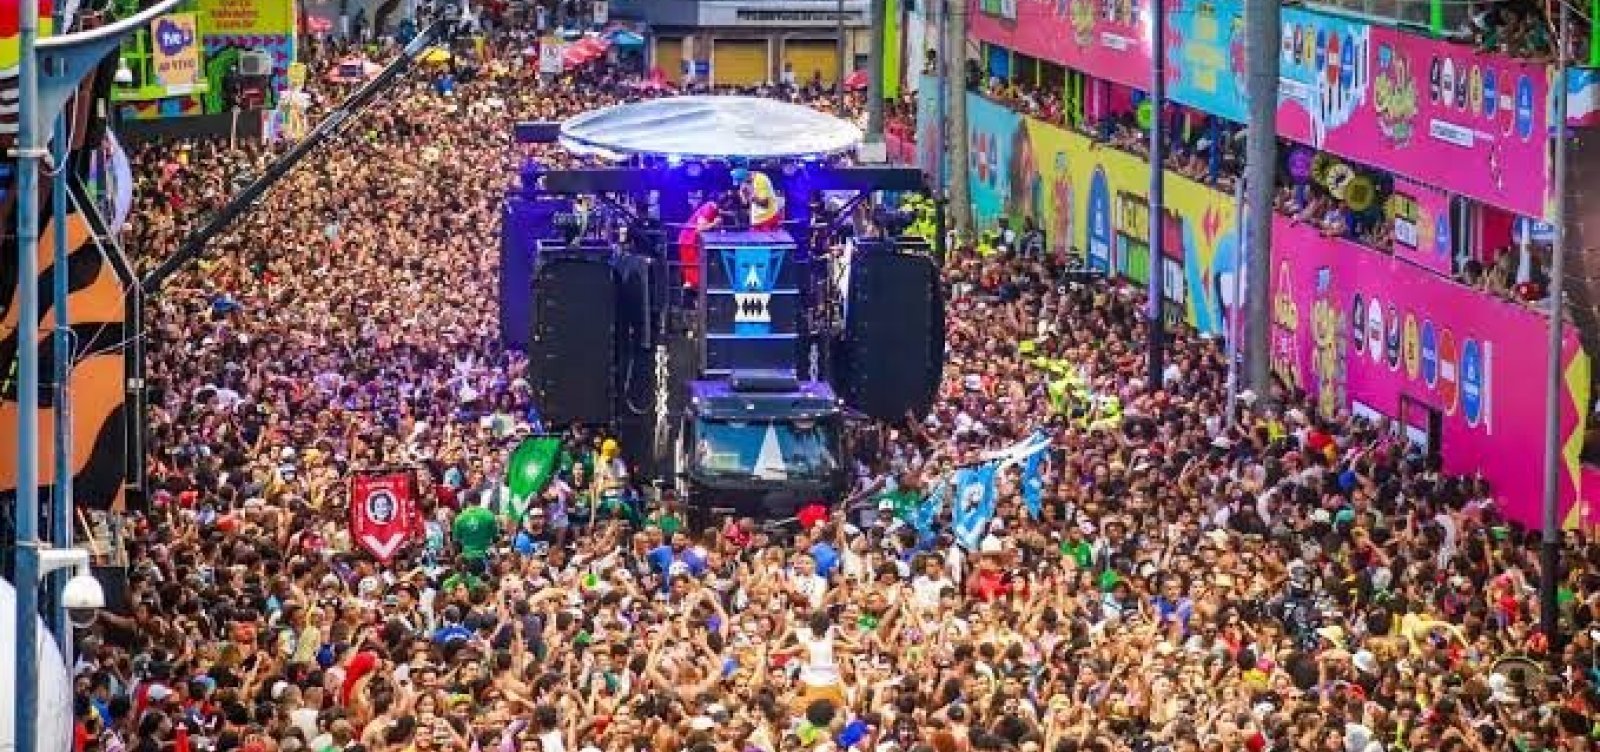 Camarotes  do Carnaval de Salvador devem ser desmontados em até dez dias